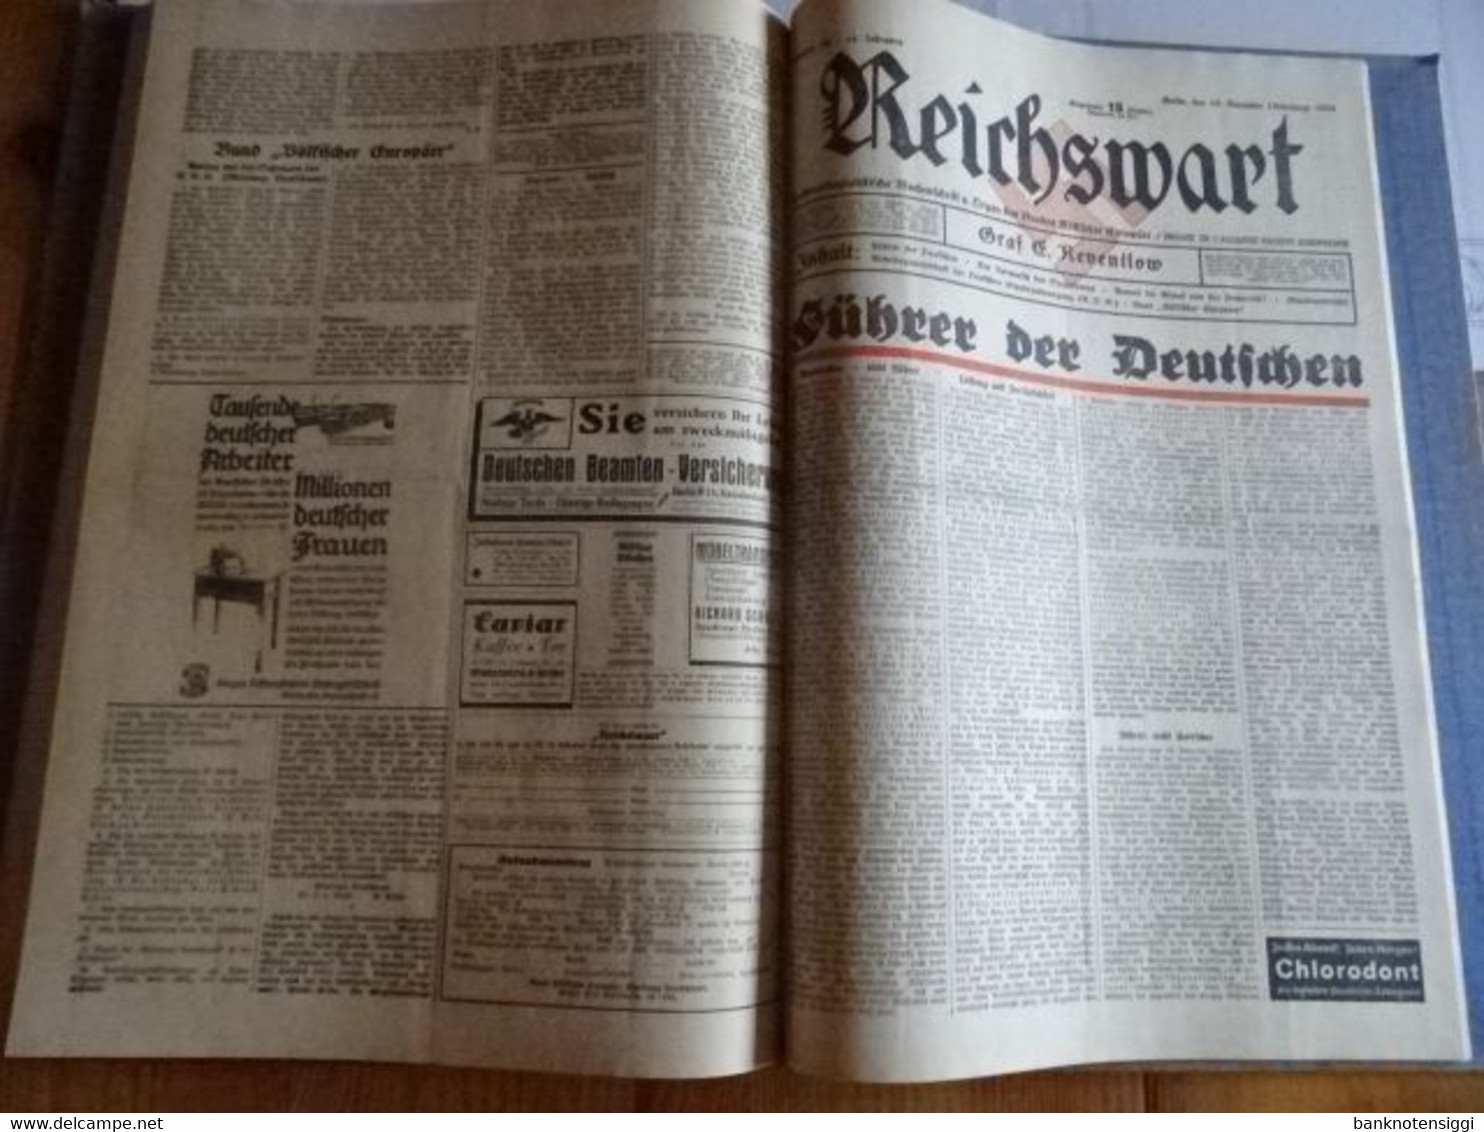 Zeitung "Reichswart Nr.1 januar bis Nr.52 Dezember 1933 als Buch gebunden